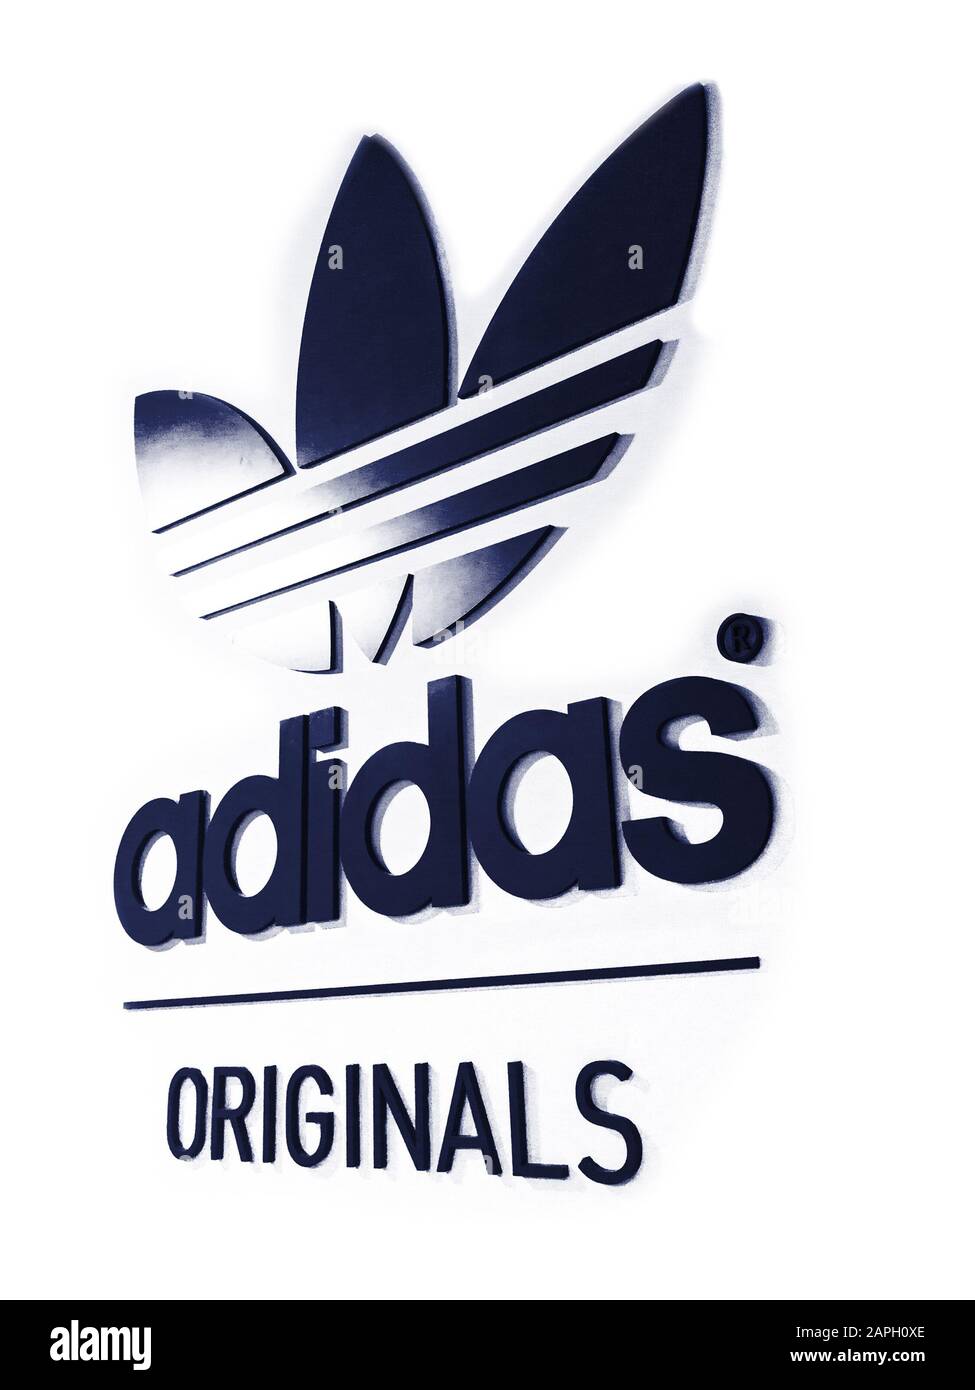 Logo du magasin adidas Banque d'images détourées - Alamy